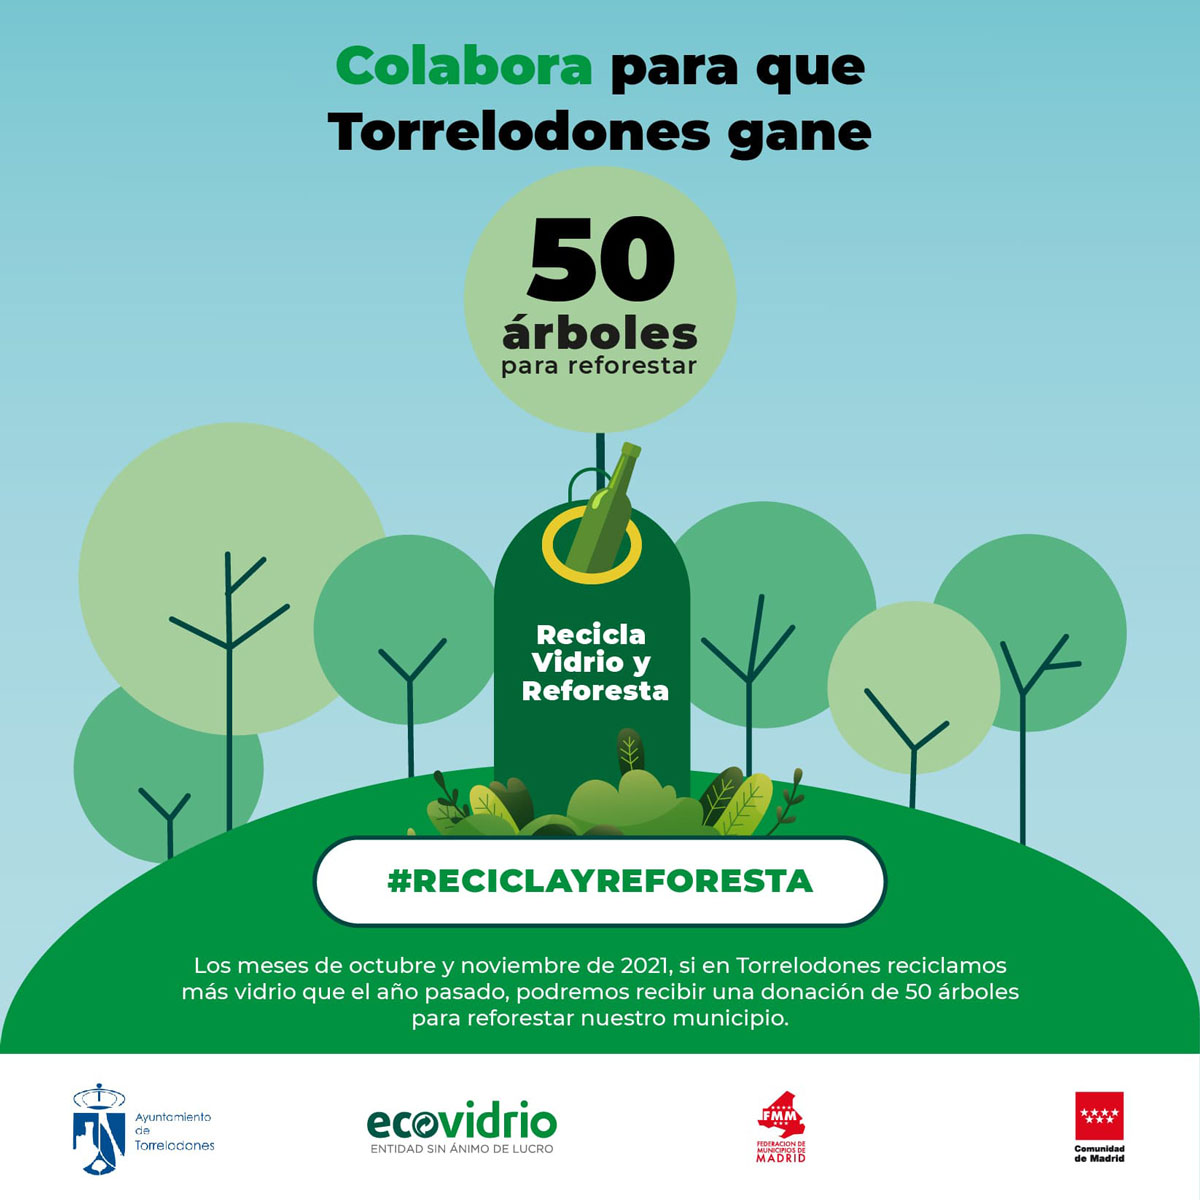 Recicla vidrio y consigue que Torrelodones gane 50 árboles para reforestar